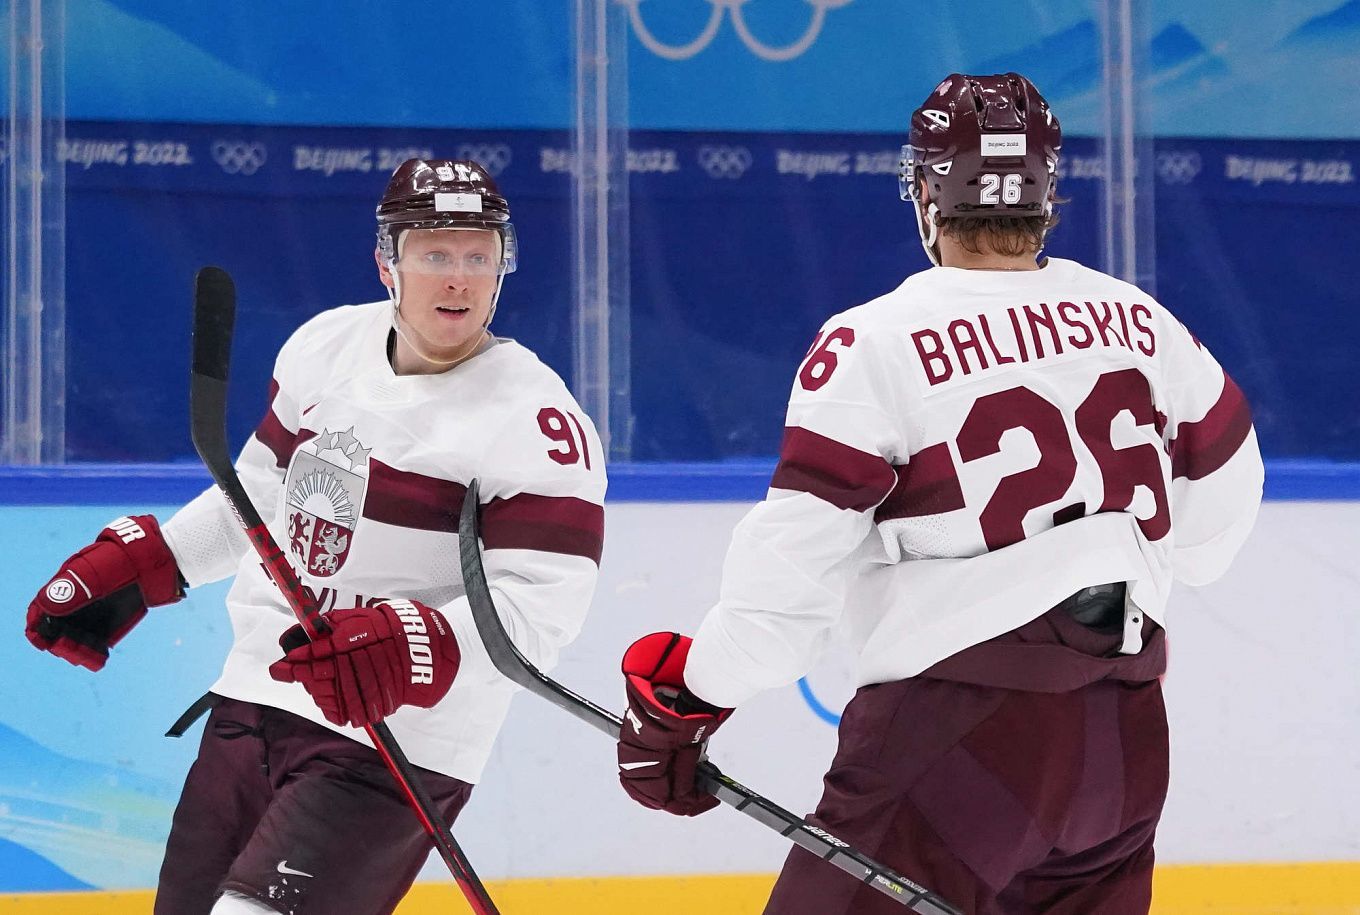 Apuestas sobre JJ.OO. – Hockey. Dinamarca vs. Letonia│15 de febrero de 2022  